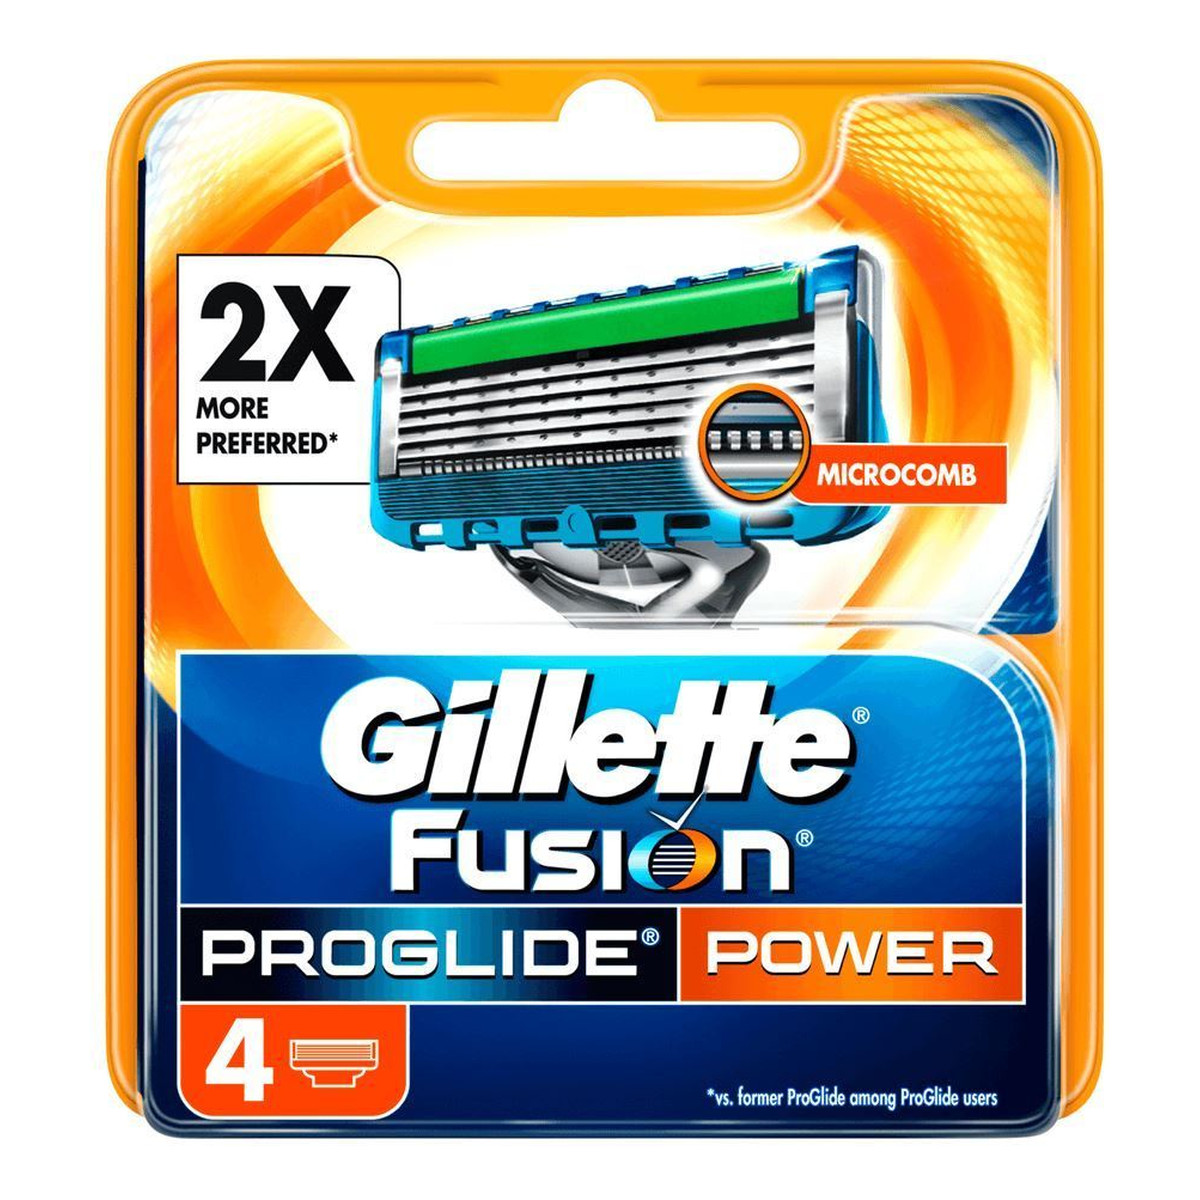 Gillette Fusion Proglide Power wymienne ostrza do maszynki do golenia 4szt